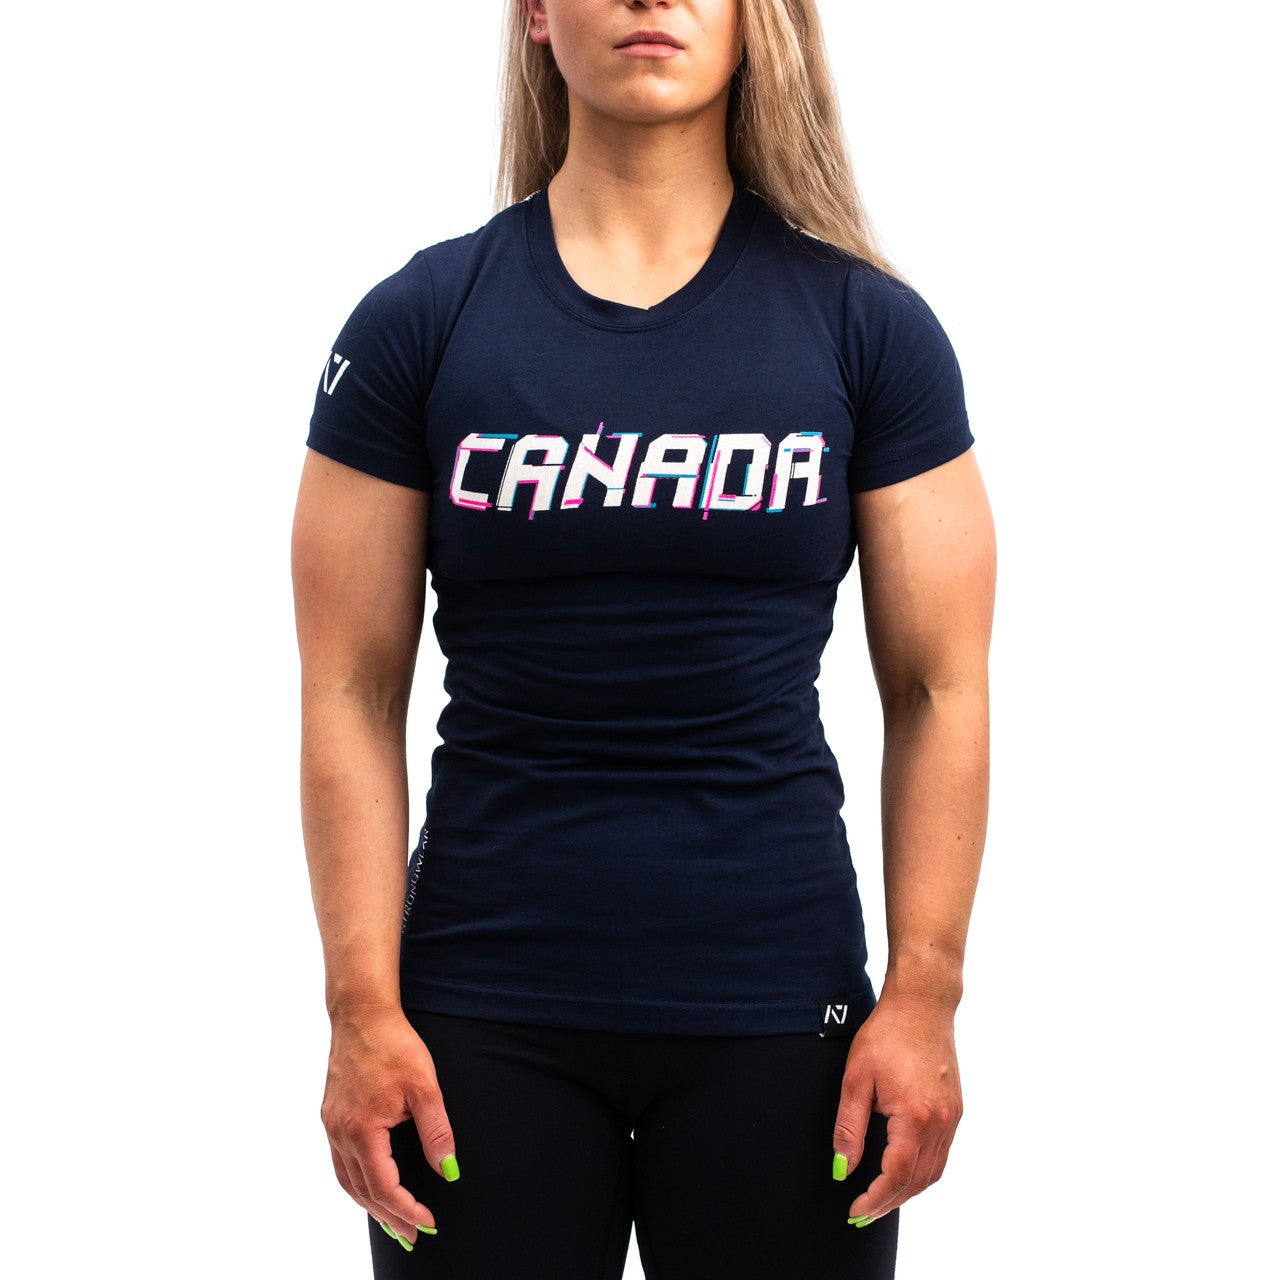 A7 Bar Grip Tシャツ『Canada Reloaded』 Women's – A7 Japan